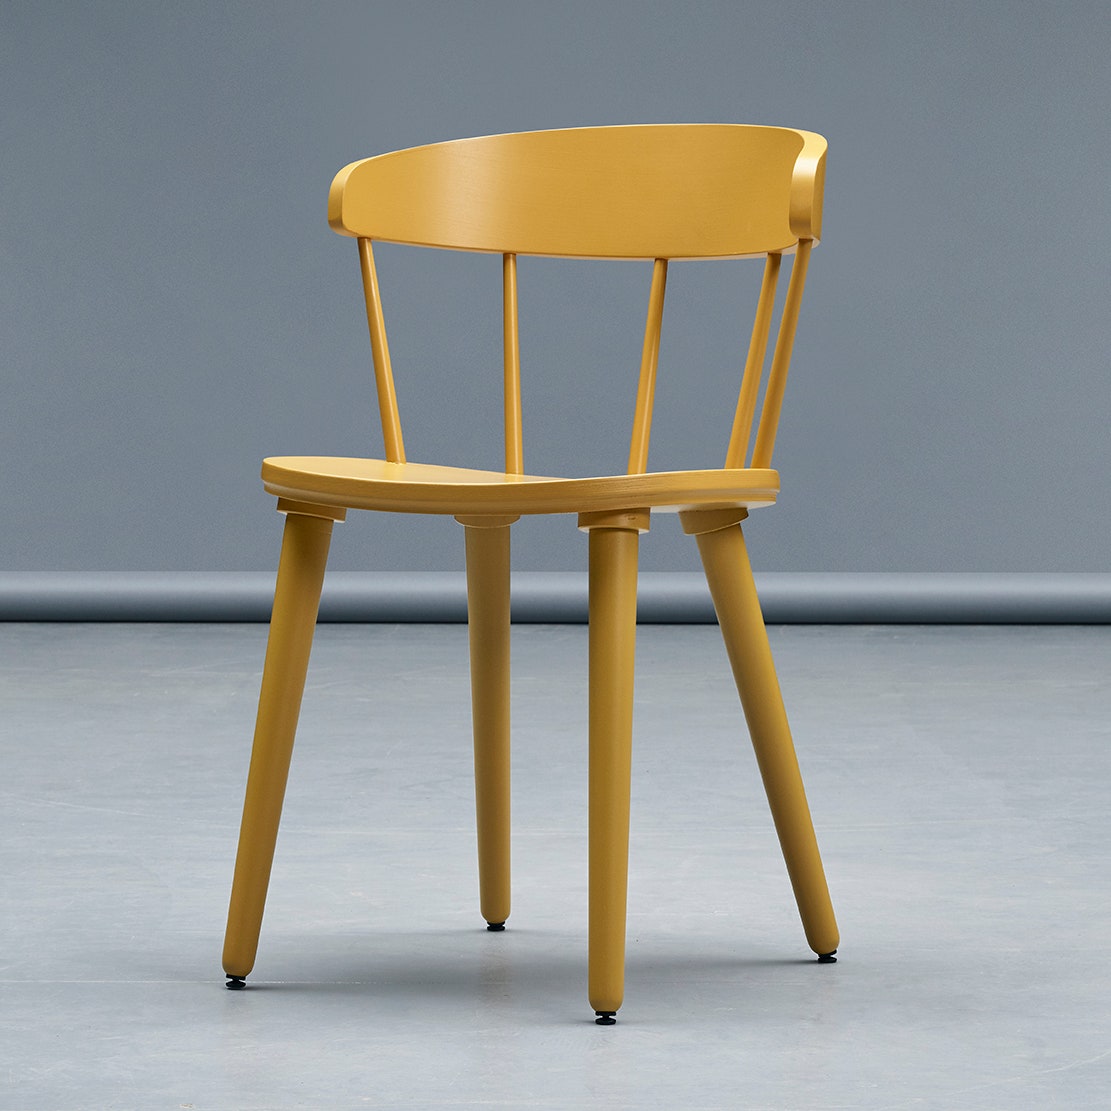 Ikea выпустит коллекцию мебели для людей с ограниченными возможностями